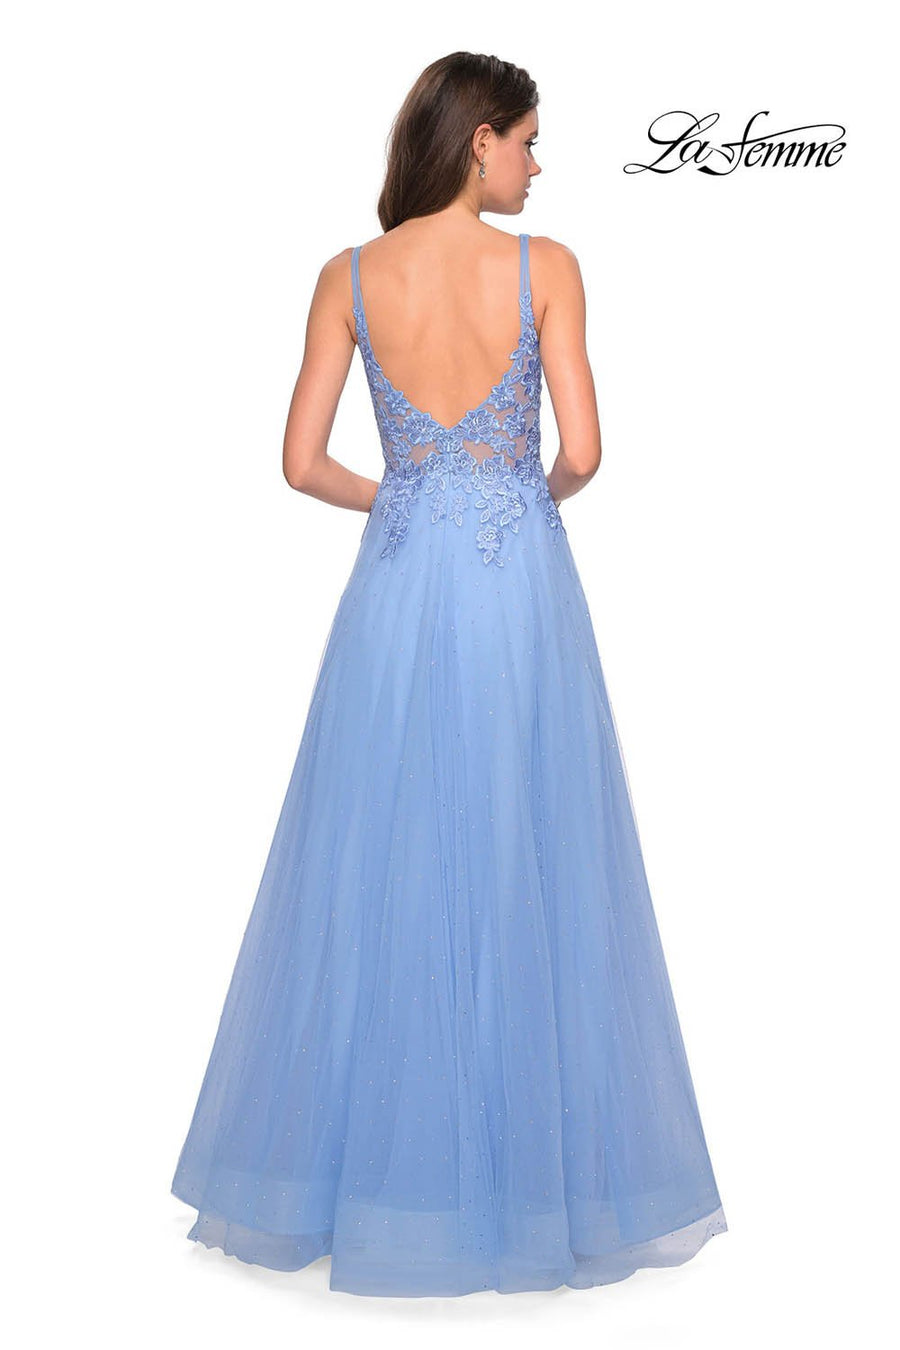 La Femme 27646 prom dress images.  La Femme 27646 is available in these colors: Cloud Blue, Mauve.